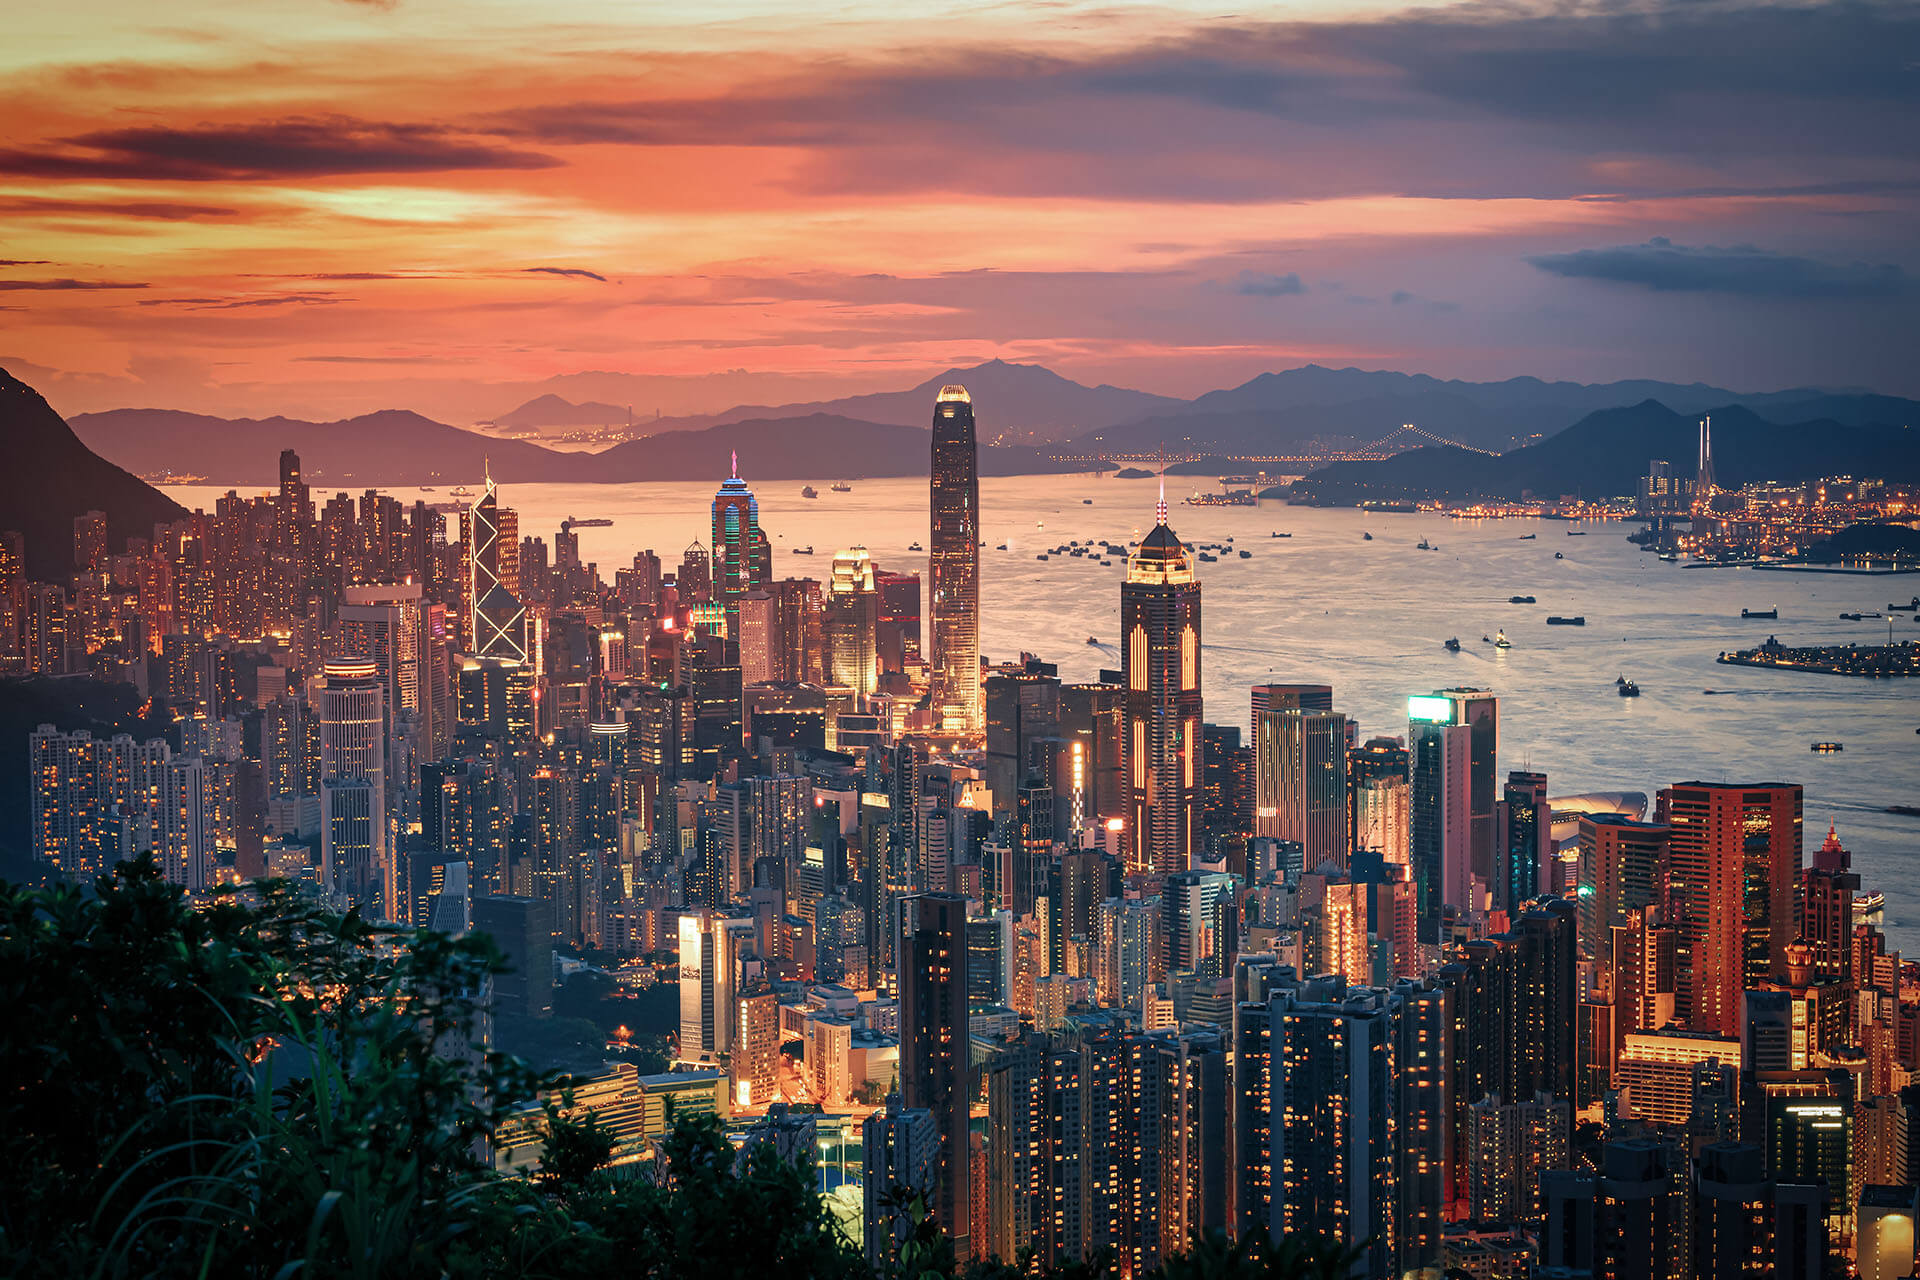 Hong Kong: Lifting of COVID-19 Vaccination Requirements